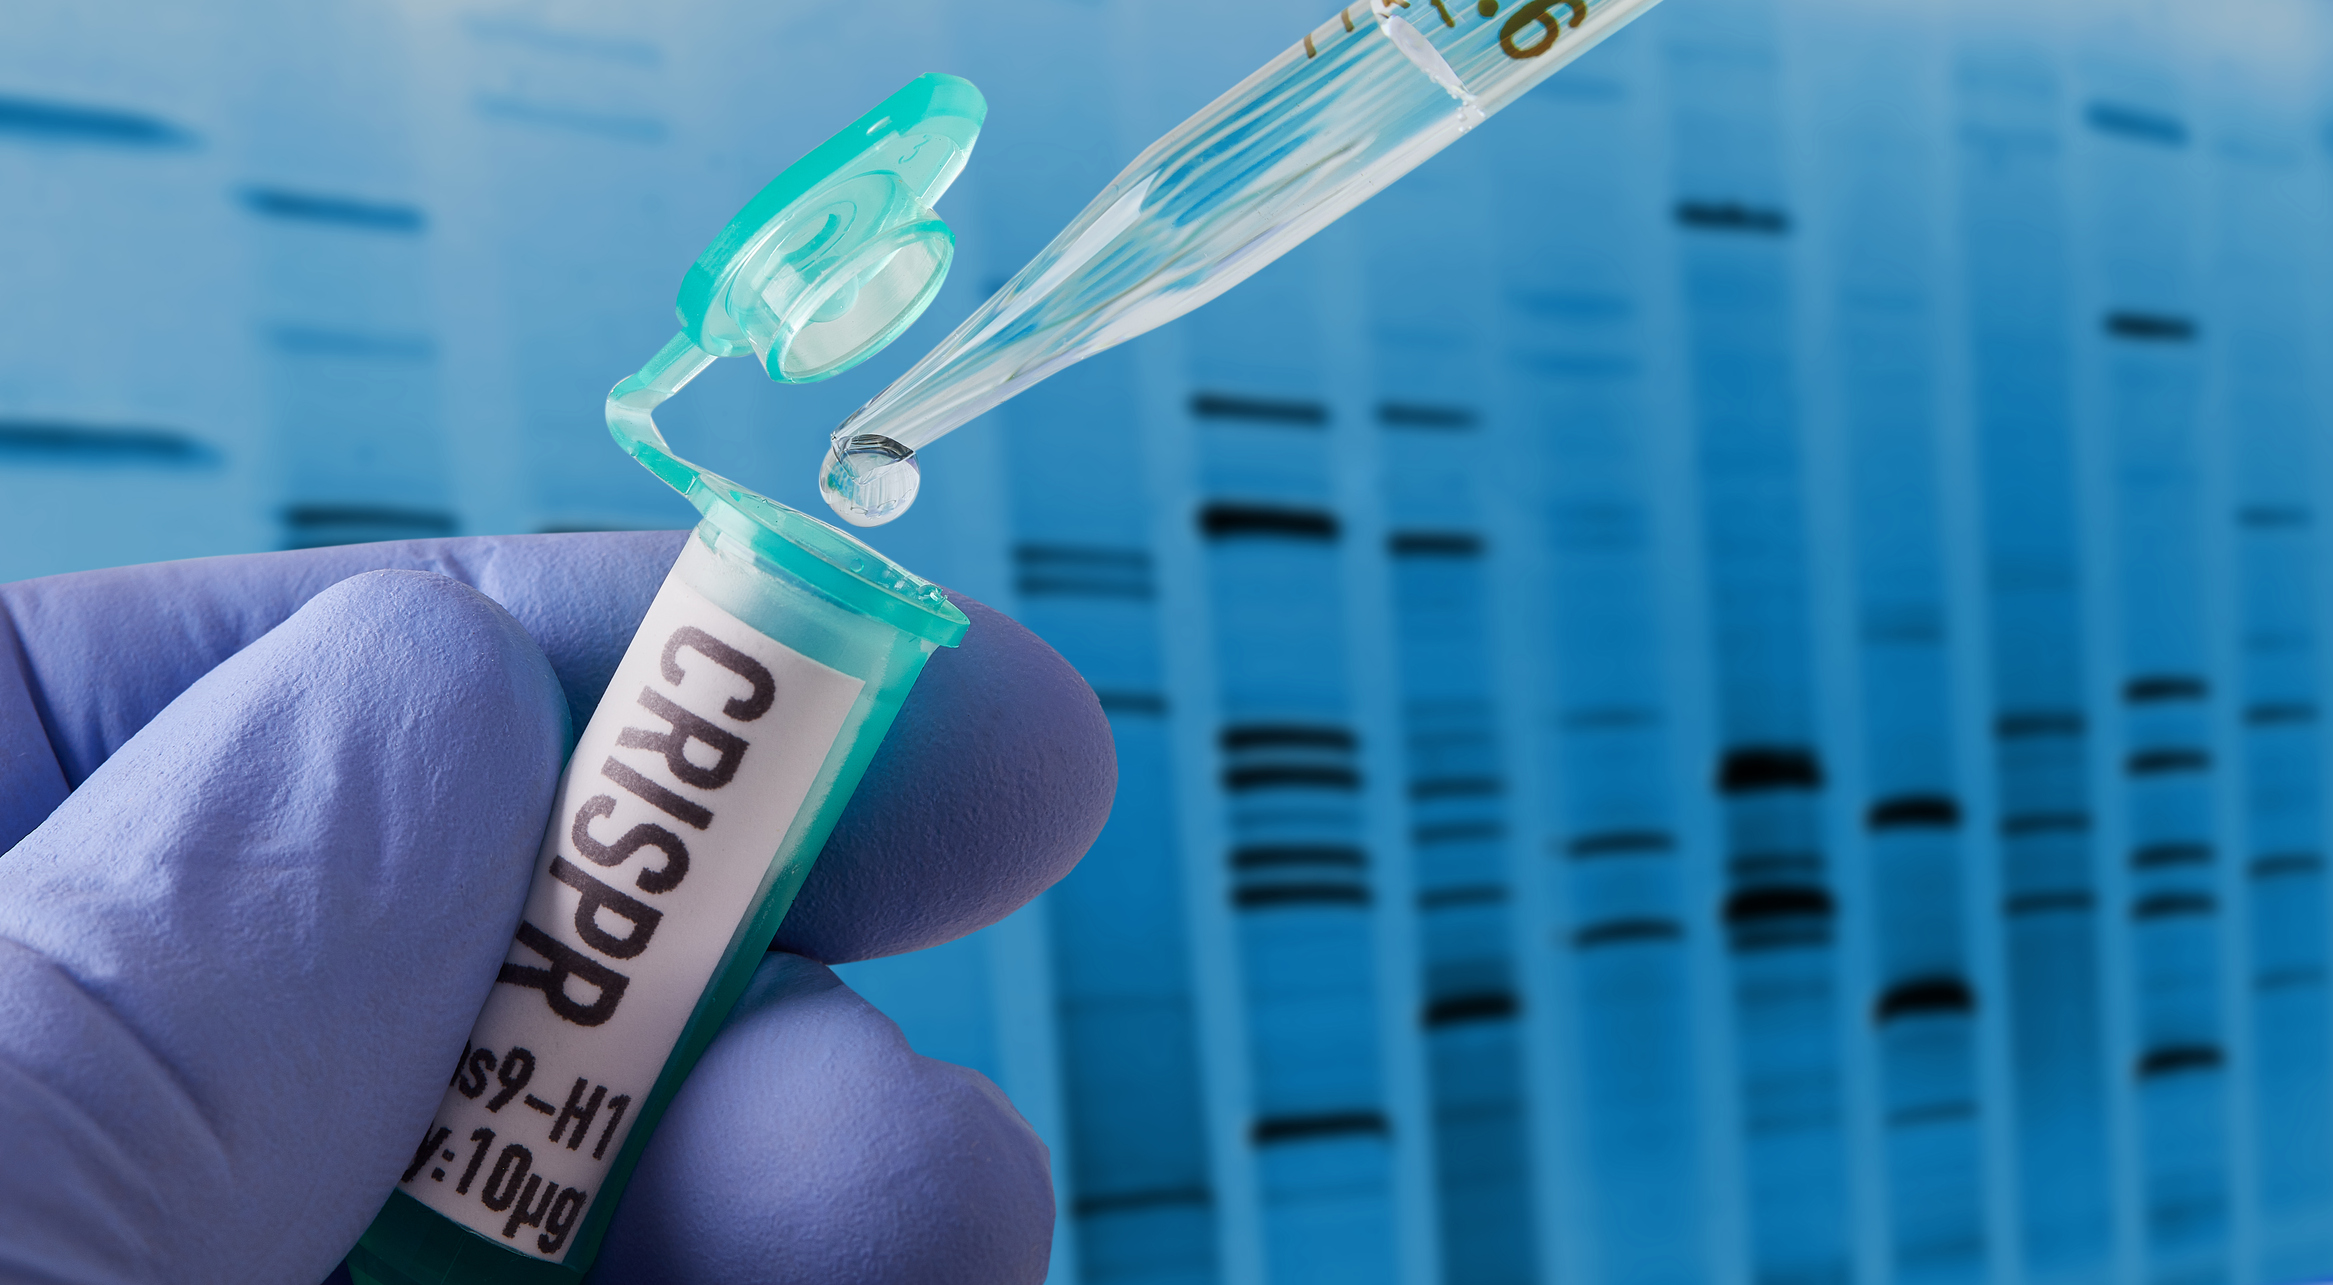 CRISPR research in laboratory - stock photo